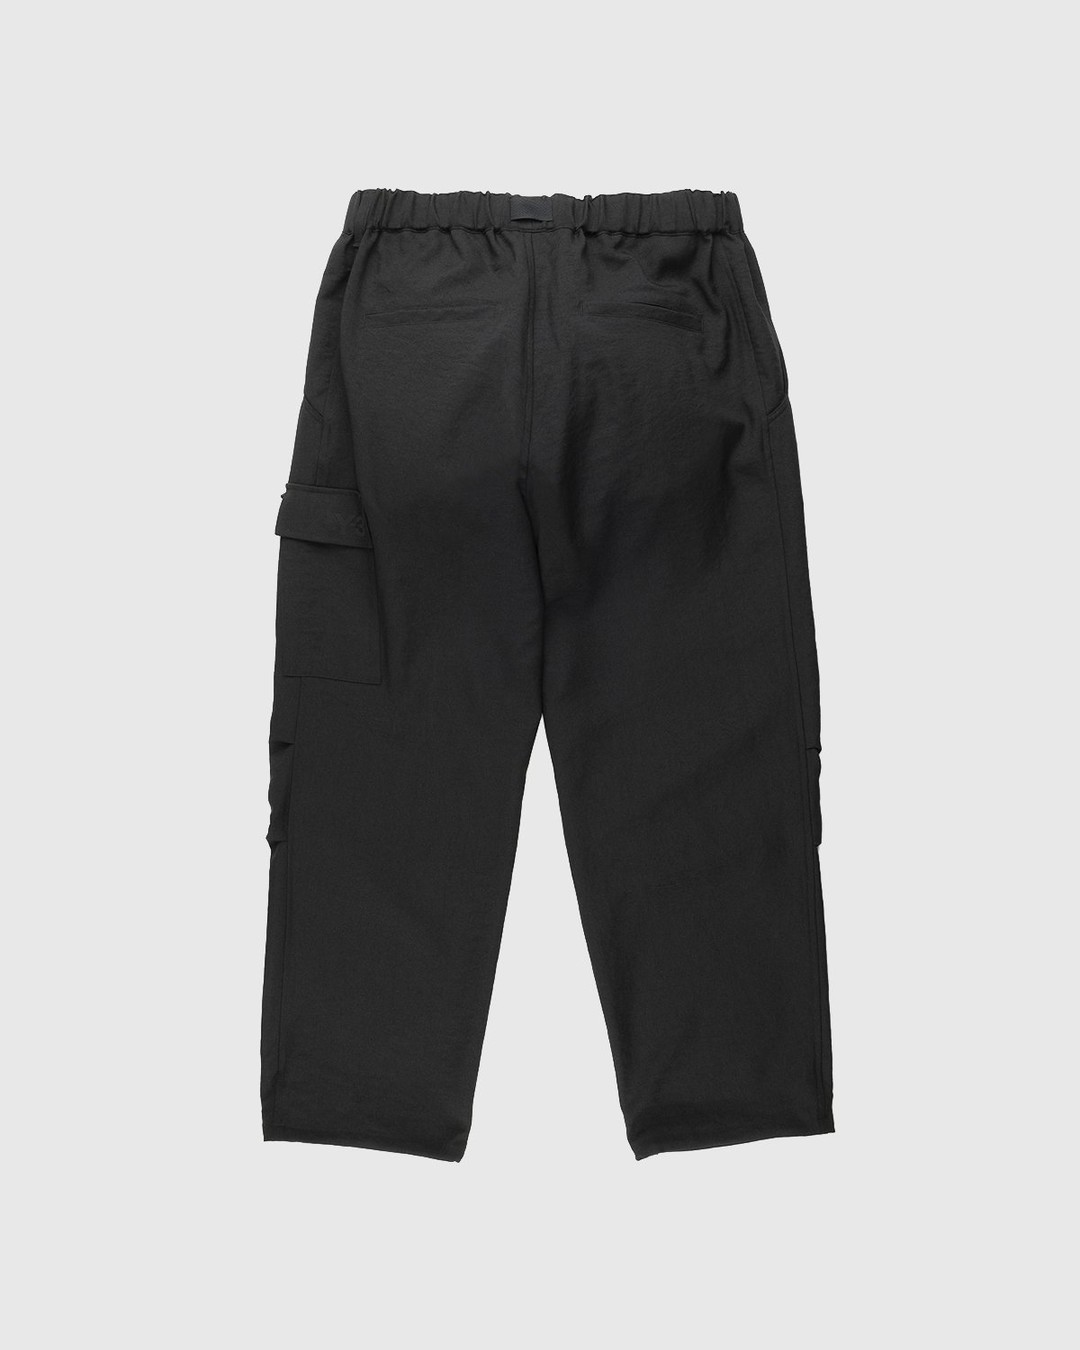 Y-3 – Classic Sport Uniform Cargo Pants Black - Cargo Pants - Black - Image 2